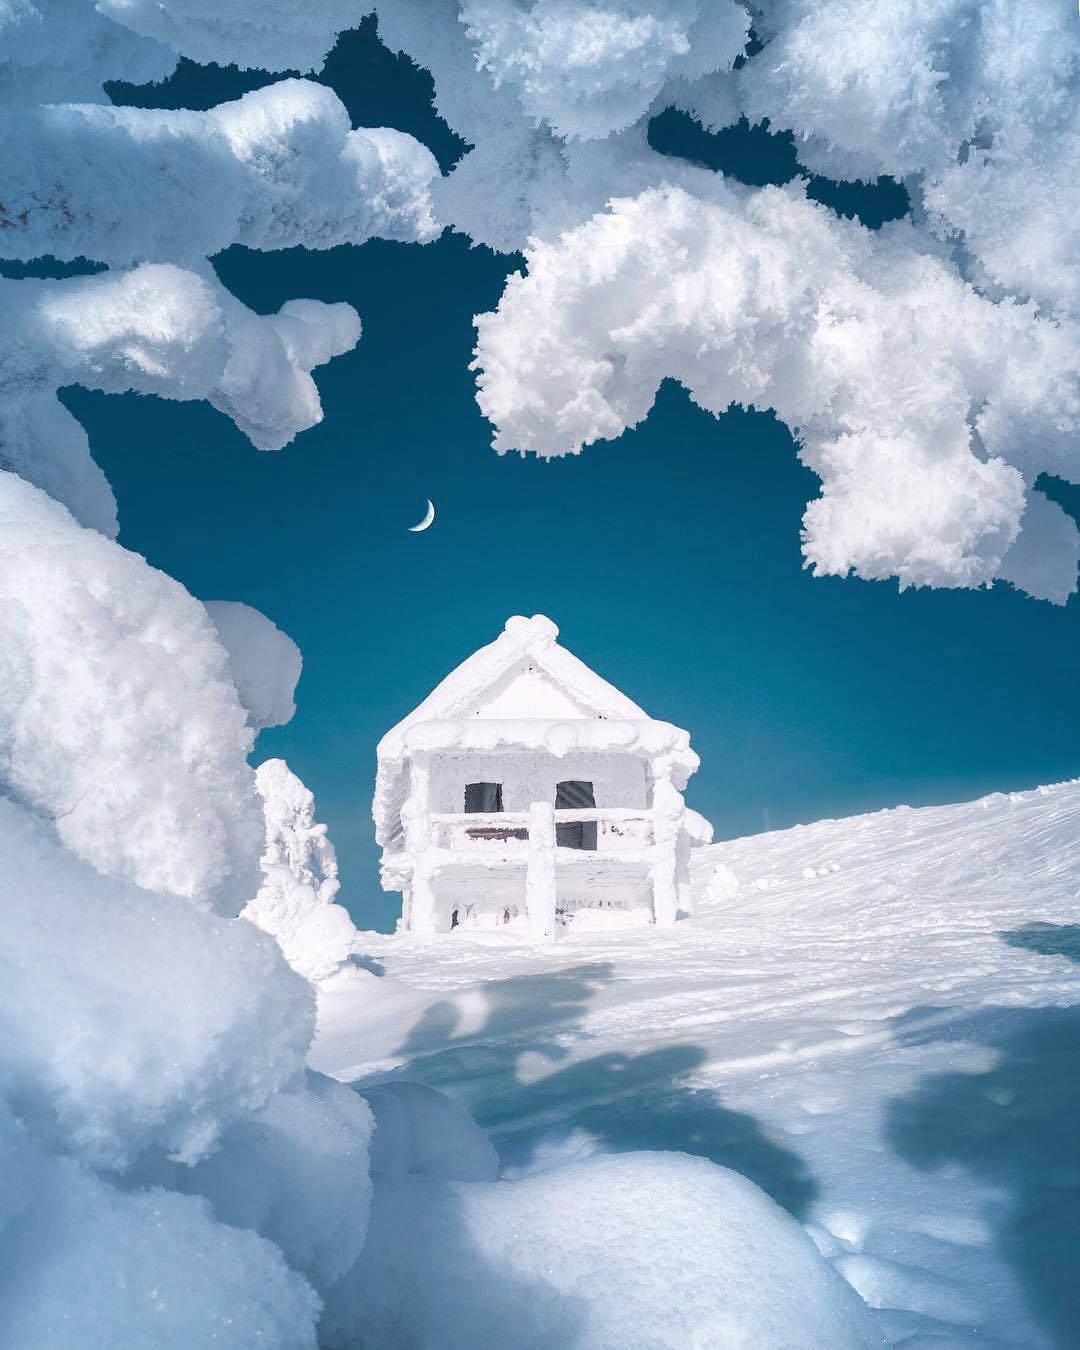  冰雪覆盖的房子，Cuma Cevik摄于冰岛拉普兰。 